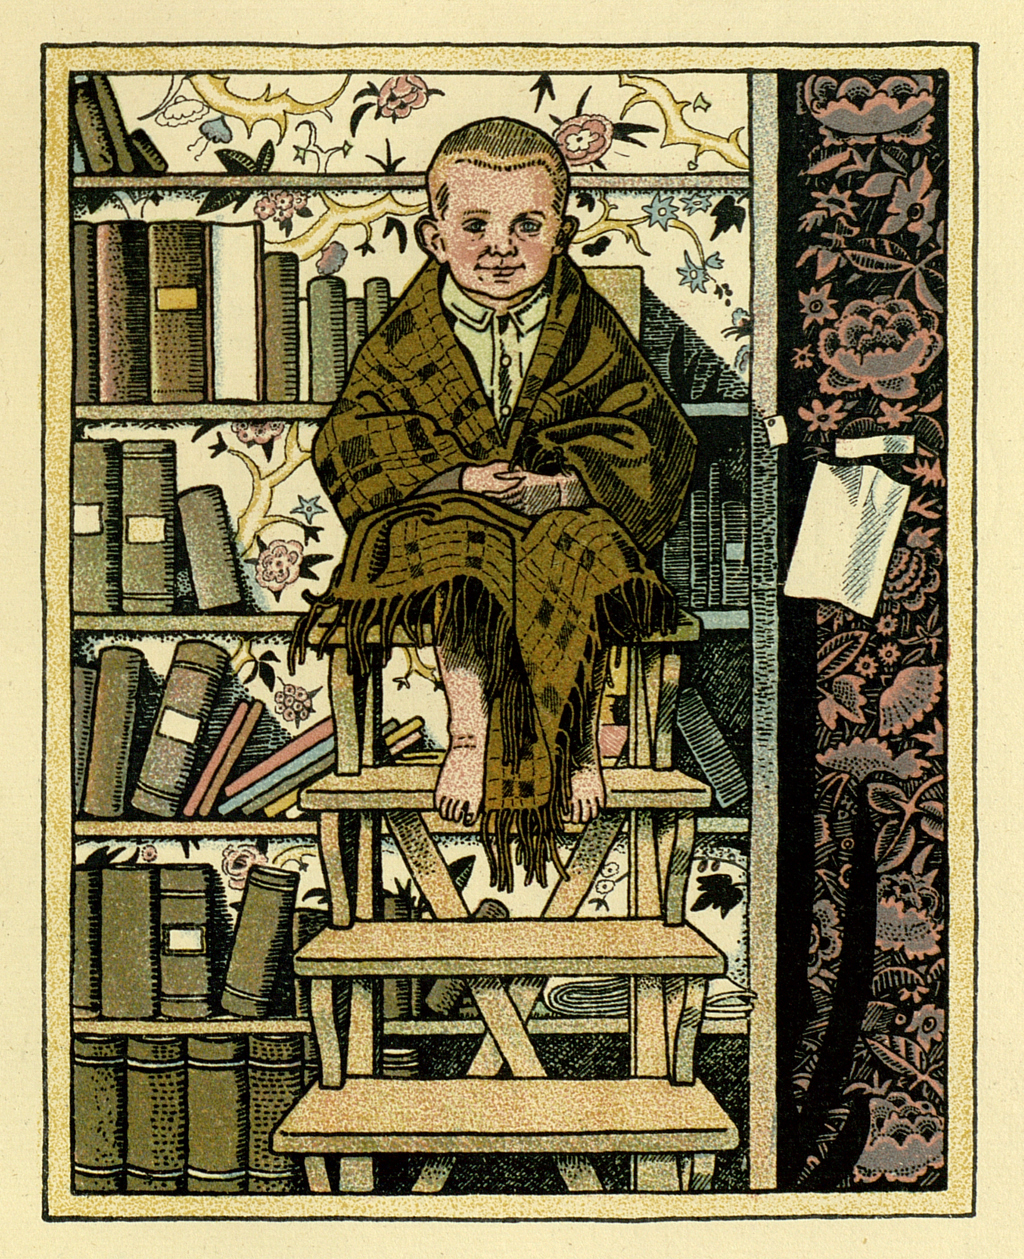 Kleiner Junge sitzt in Decke gehüllt auf einer Stufenleiter die vor einem Bücherregal steht. Bild von Franz Wacik.